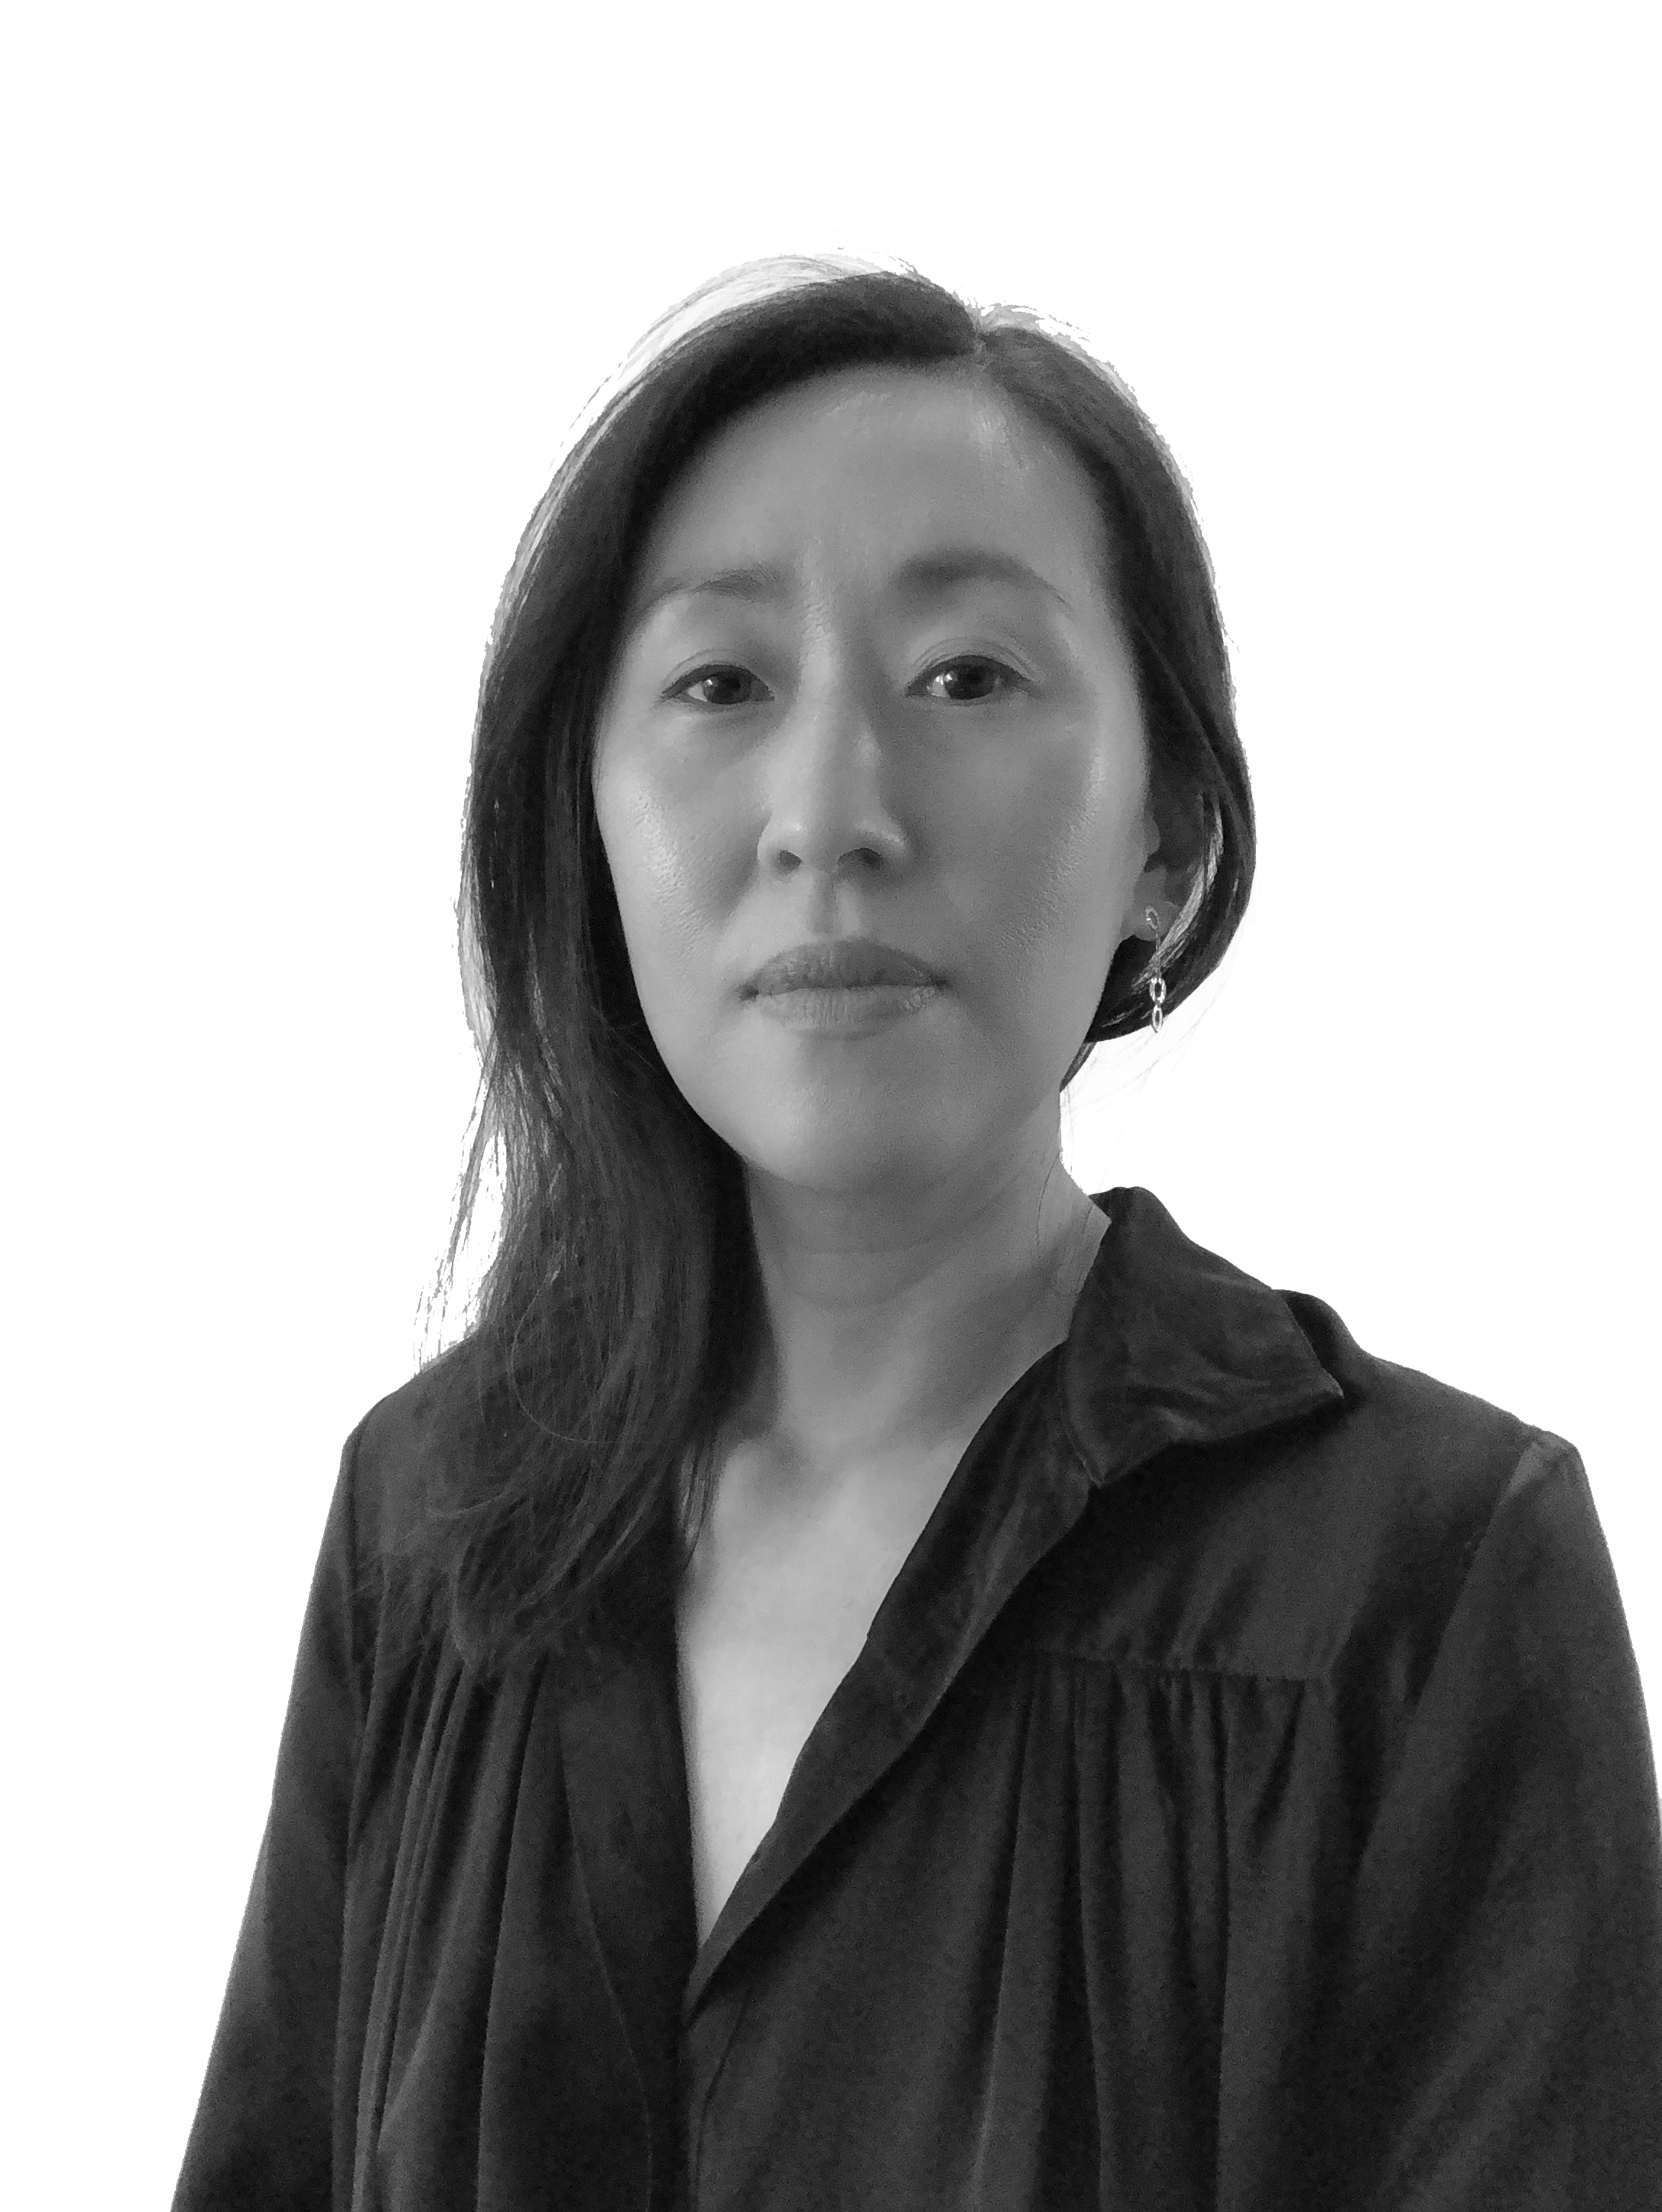 Black and white headshot of Fiona Lim Tung